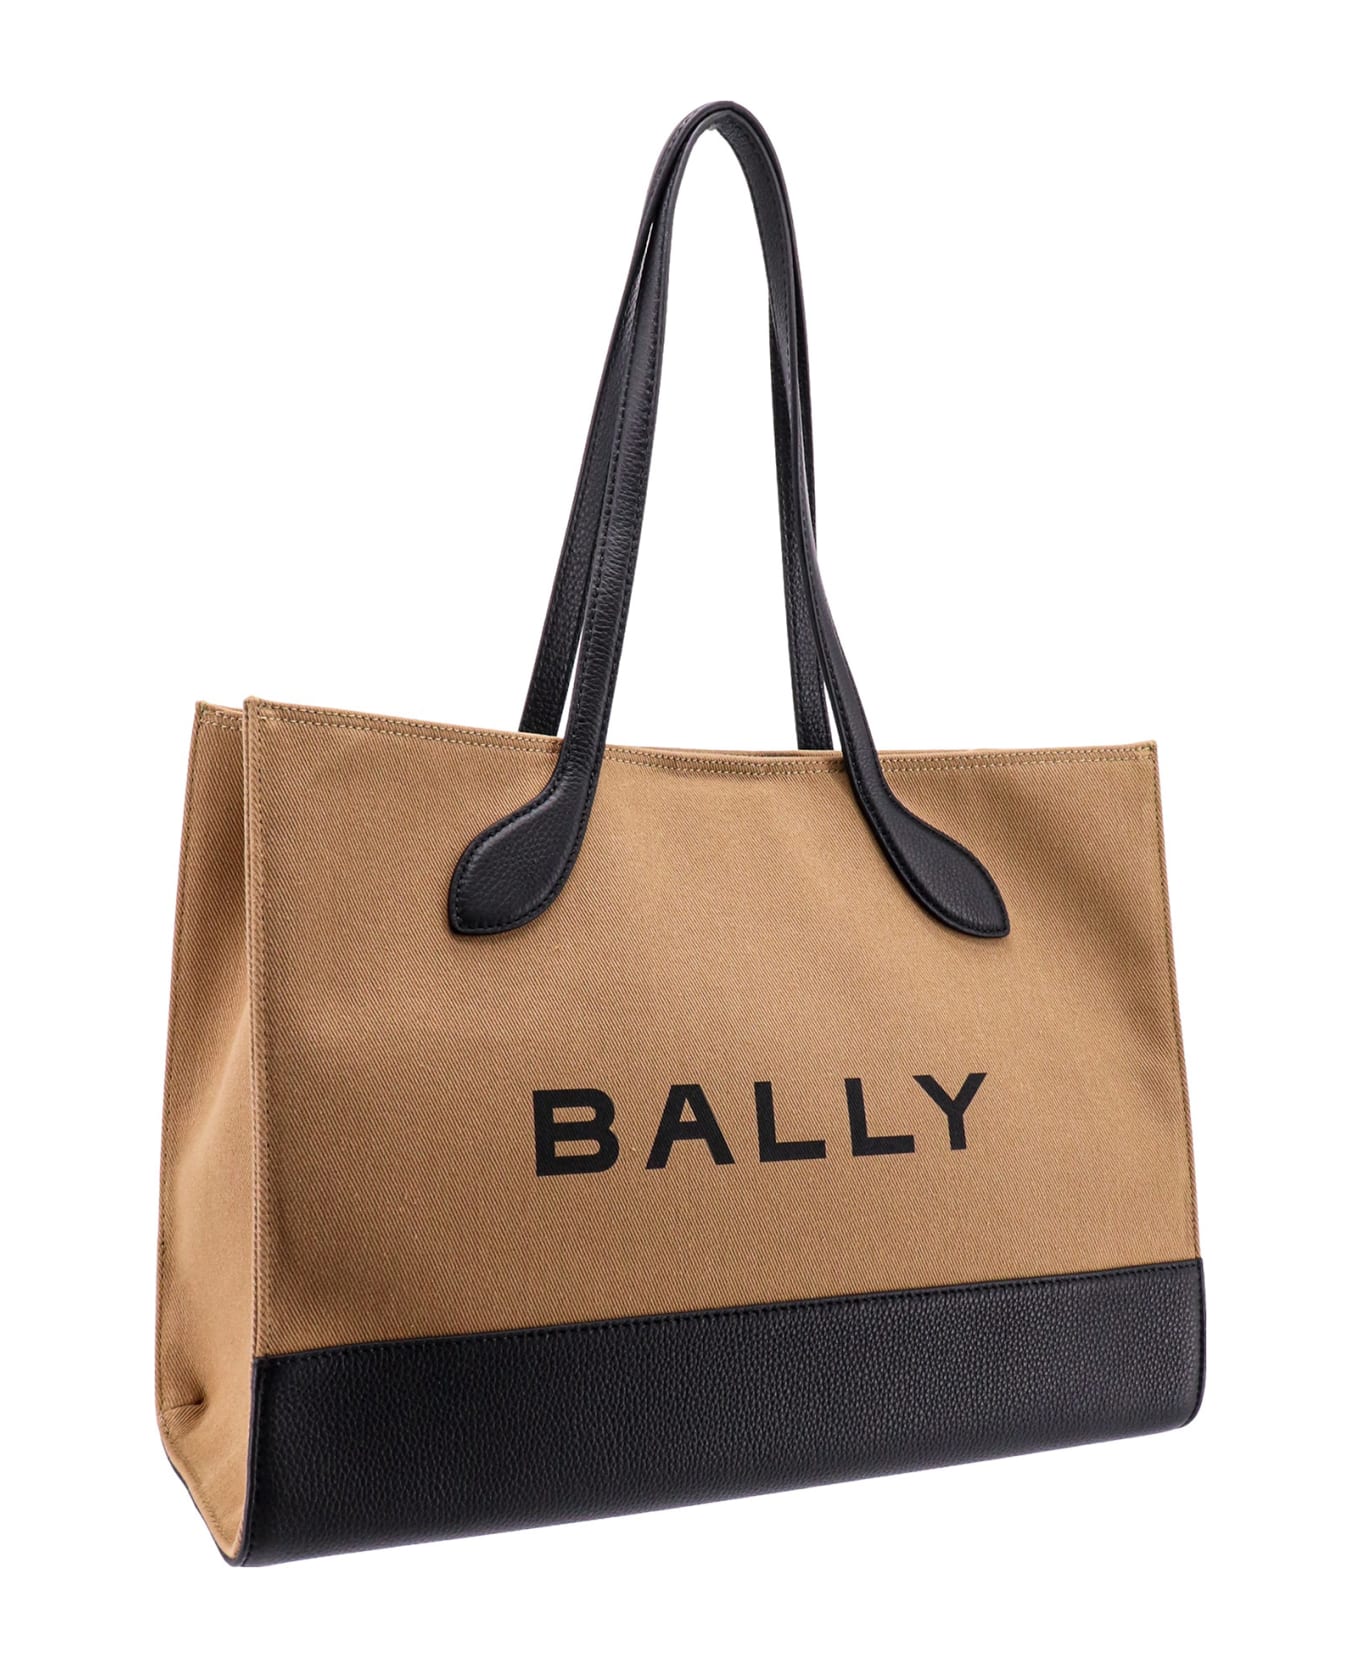 Bally Shoulder Bag - Sand